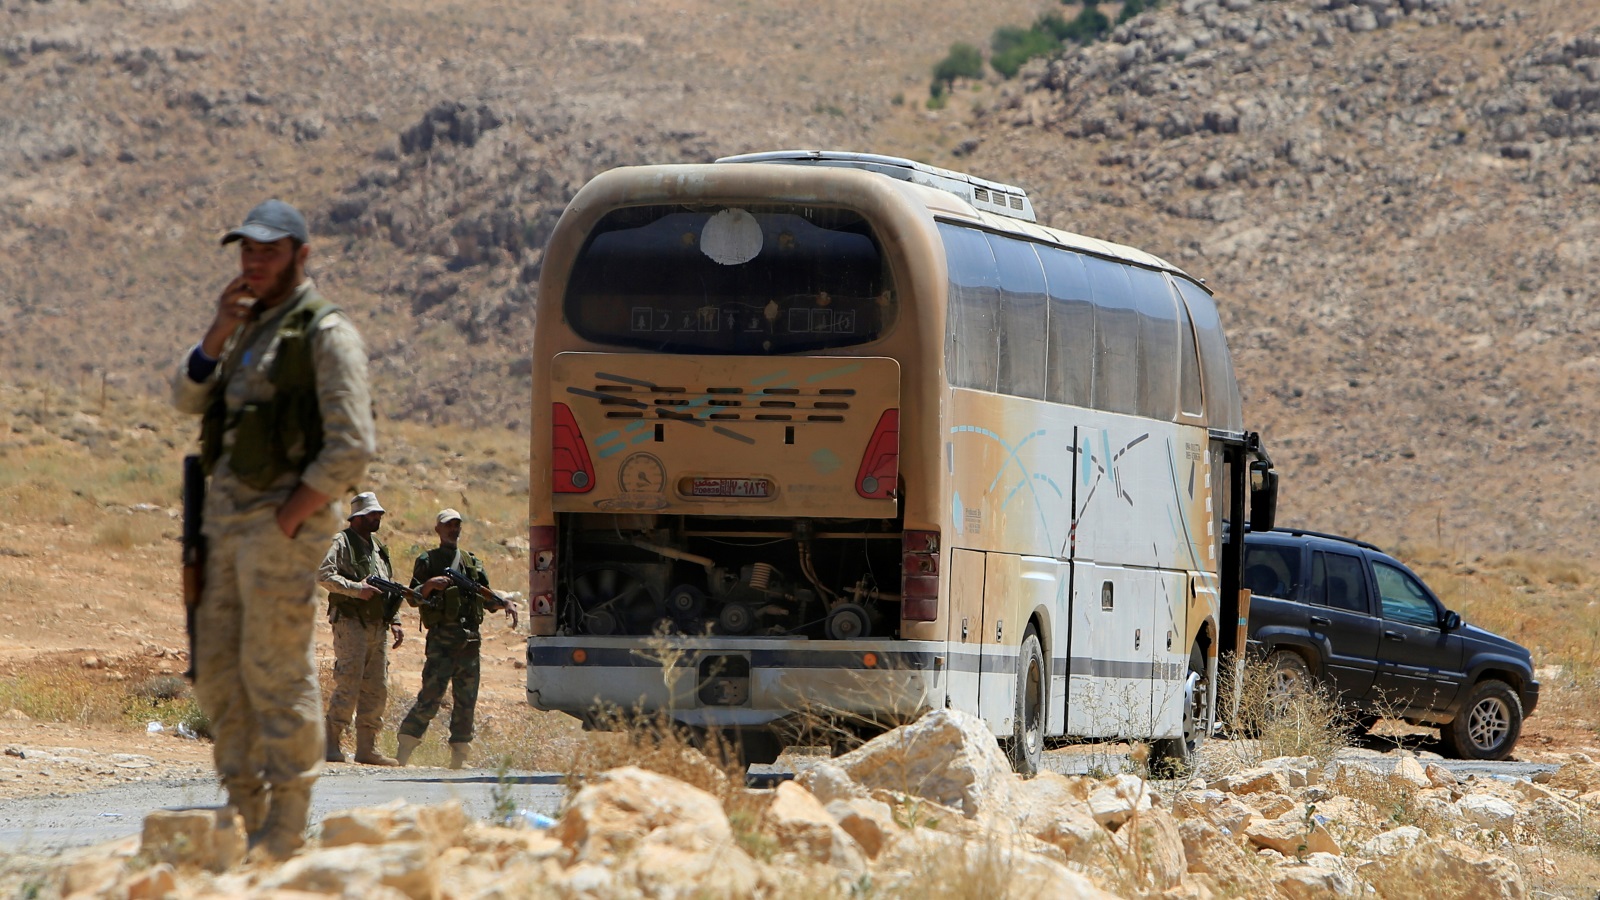 ‪مسلحون من حزب الله قرب إحدى الحافلات قبل انطلاقها للقلمون الشرقي في سوريا‬ مسلحون من حزب الله قرب إحدى الحافلات قبل انطلاقها للقلمون الشرقي في سوريا (رويترز)